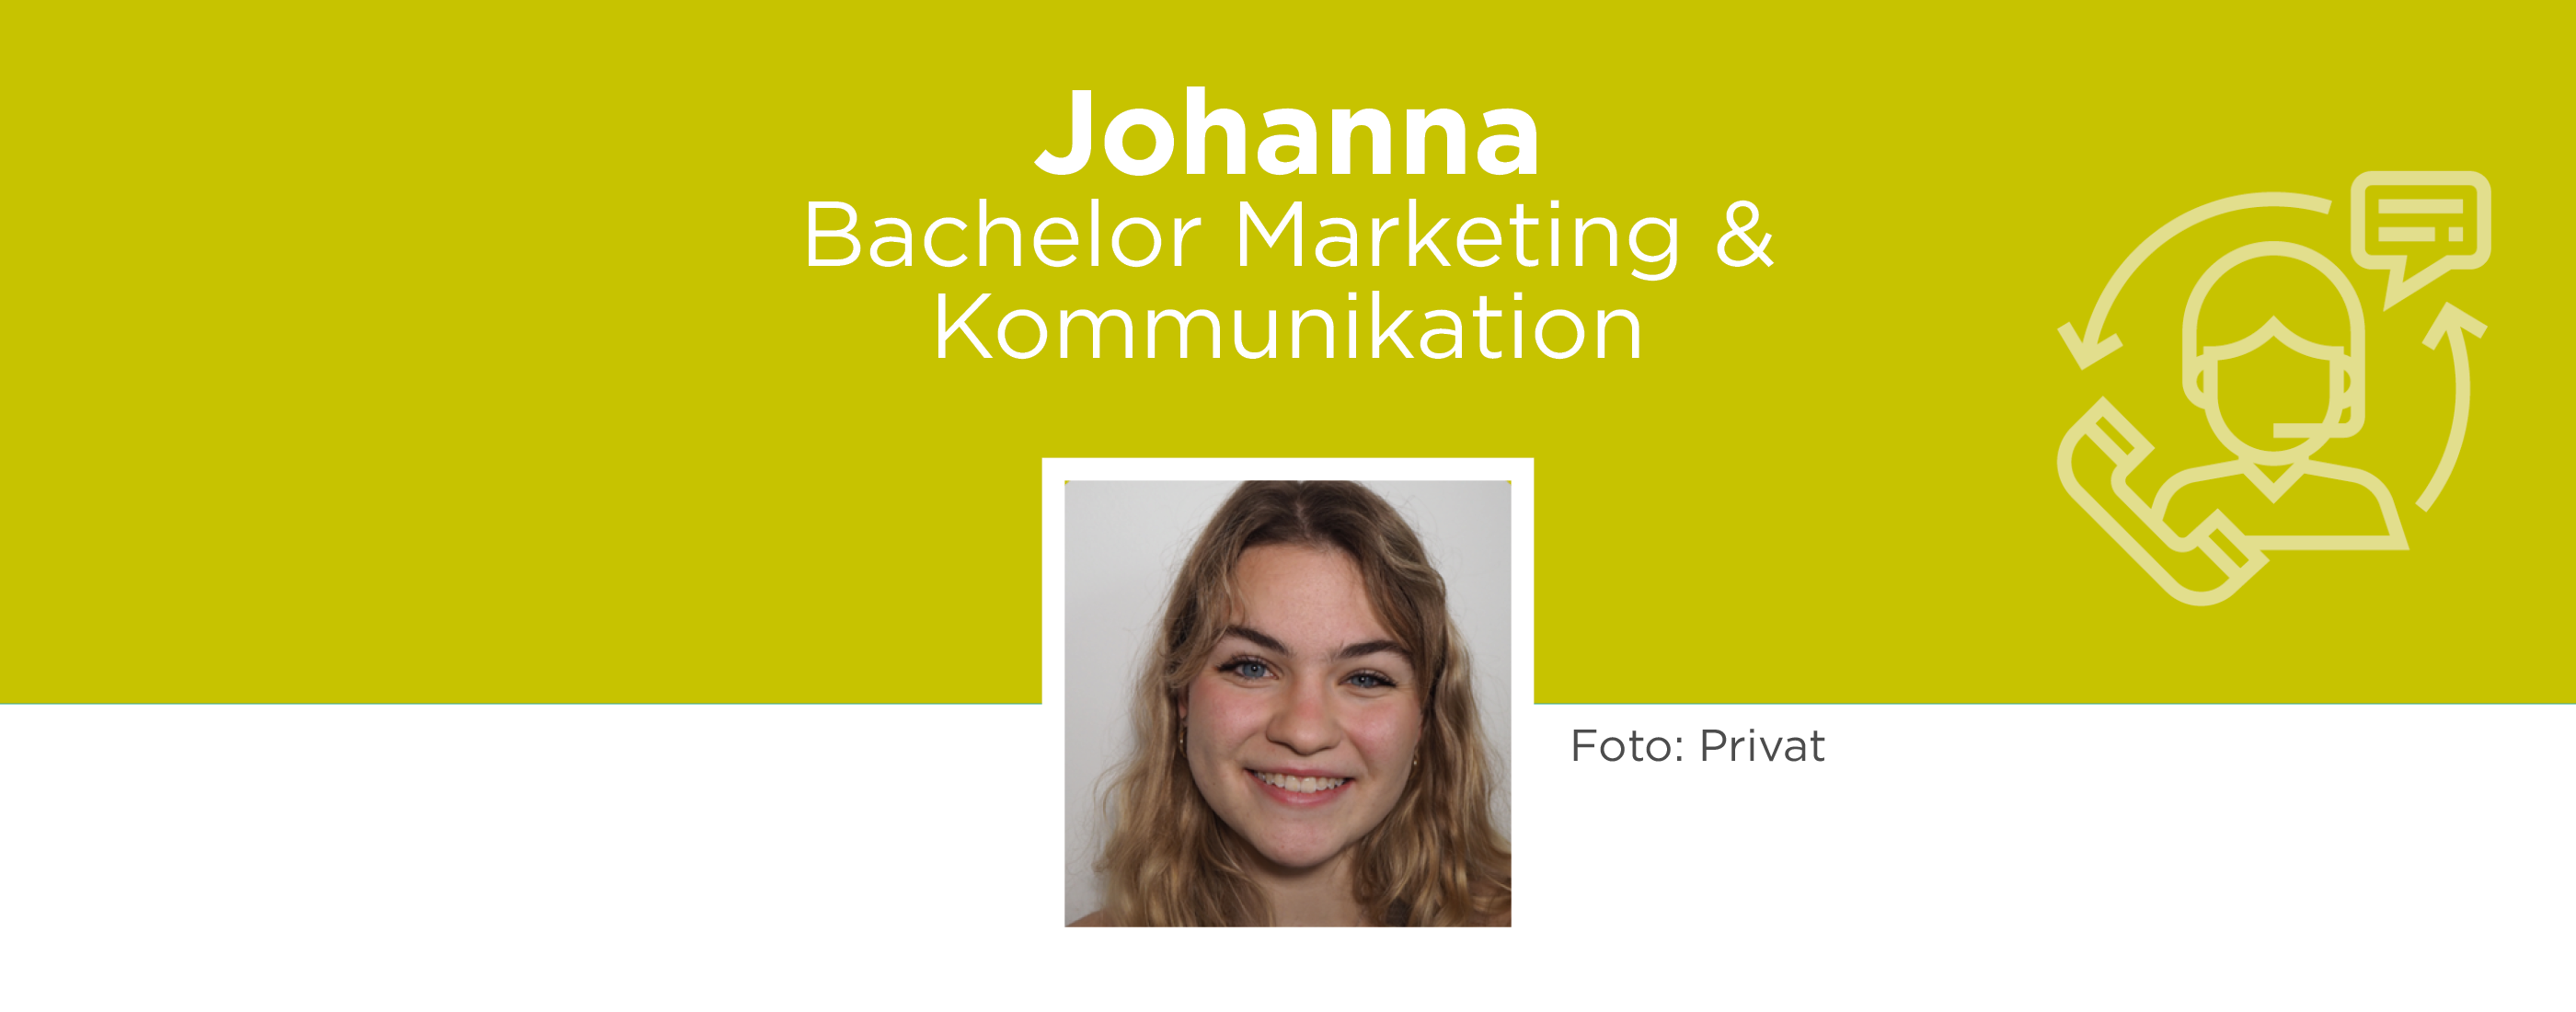 Student Ambassador Johanna